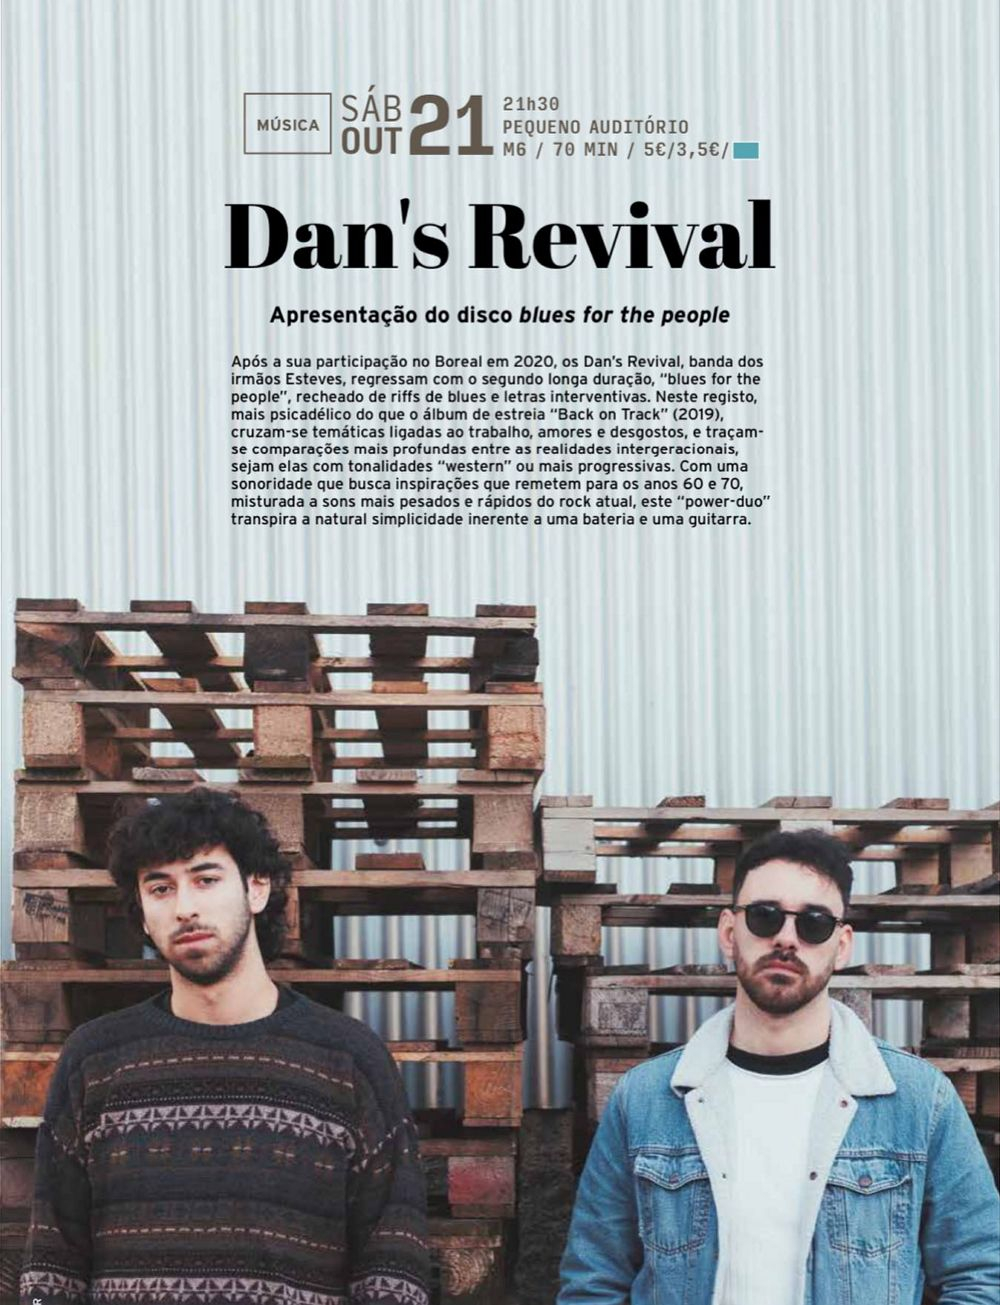 Dan’s Revival Preparam novo álbum na adversidade do interior envelhecido